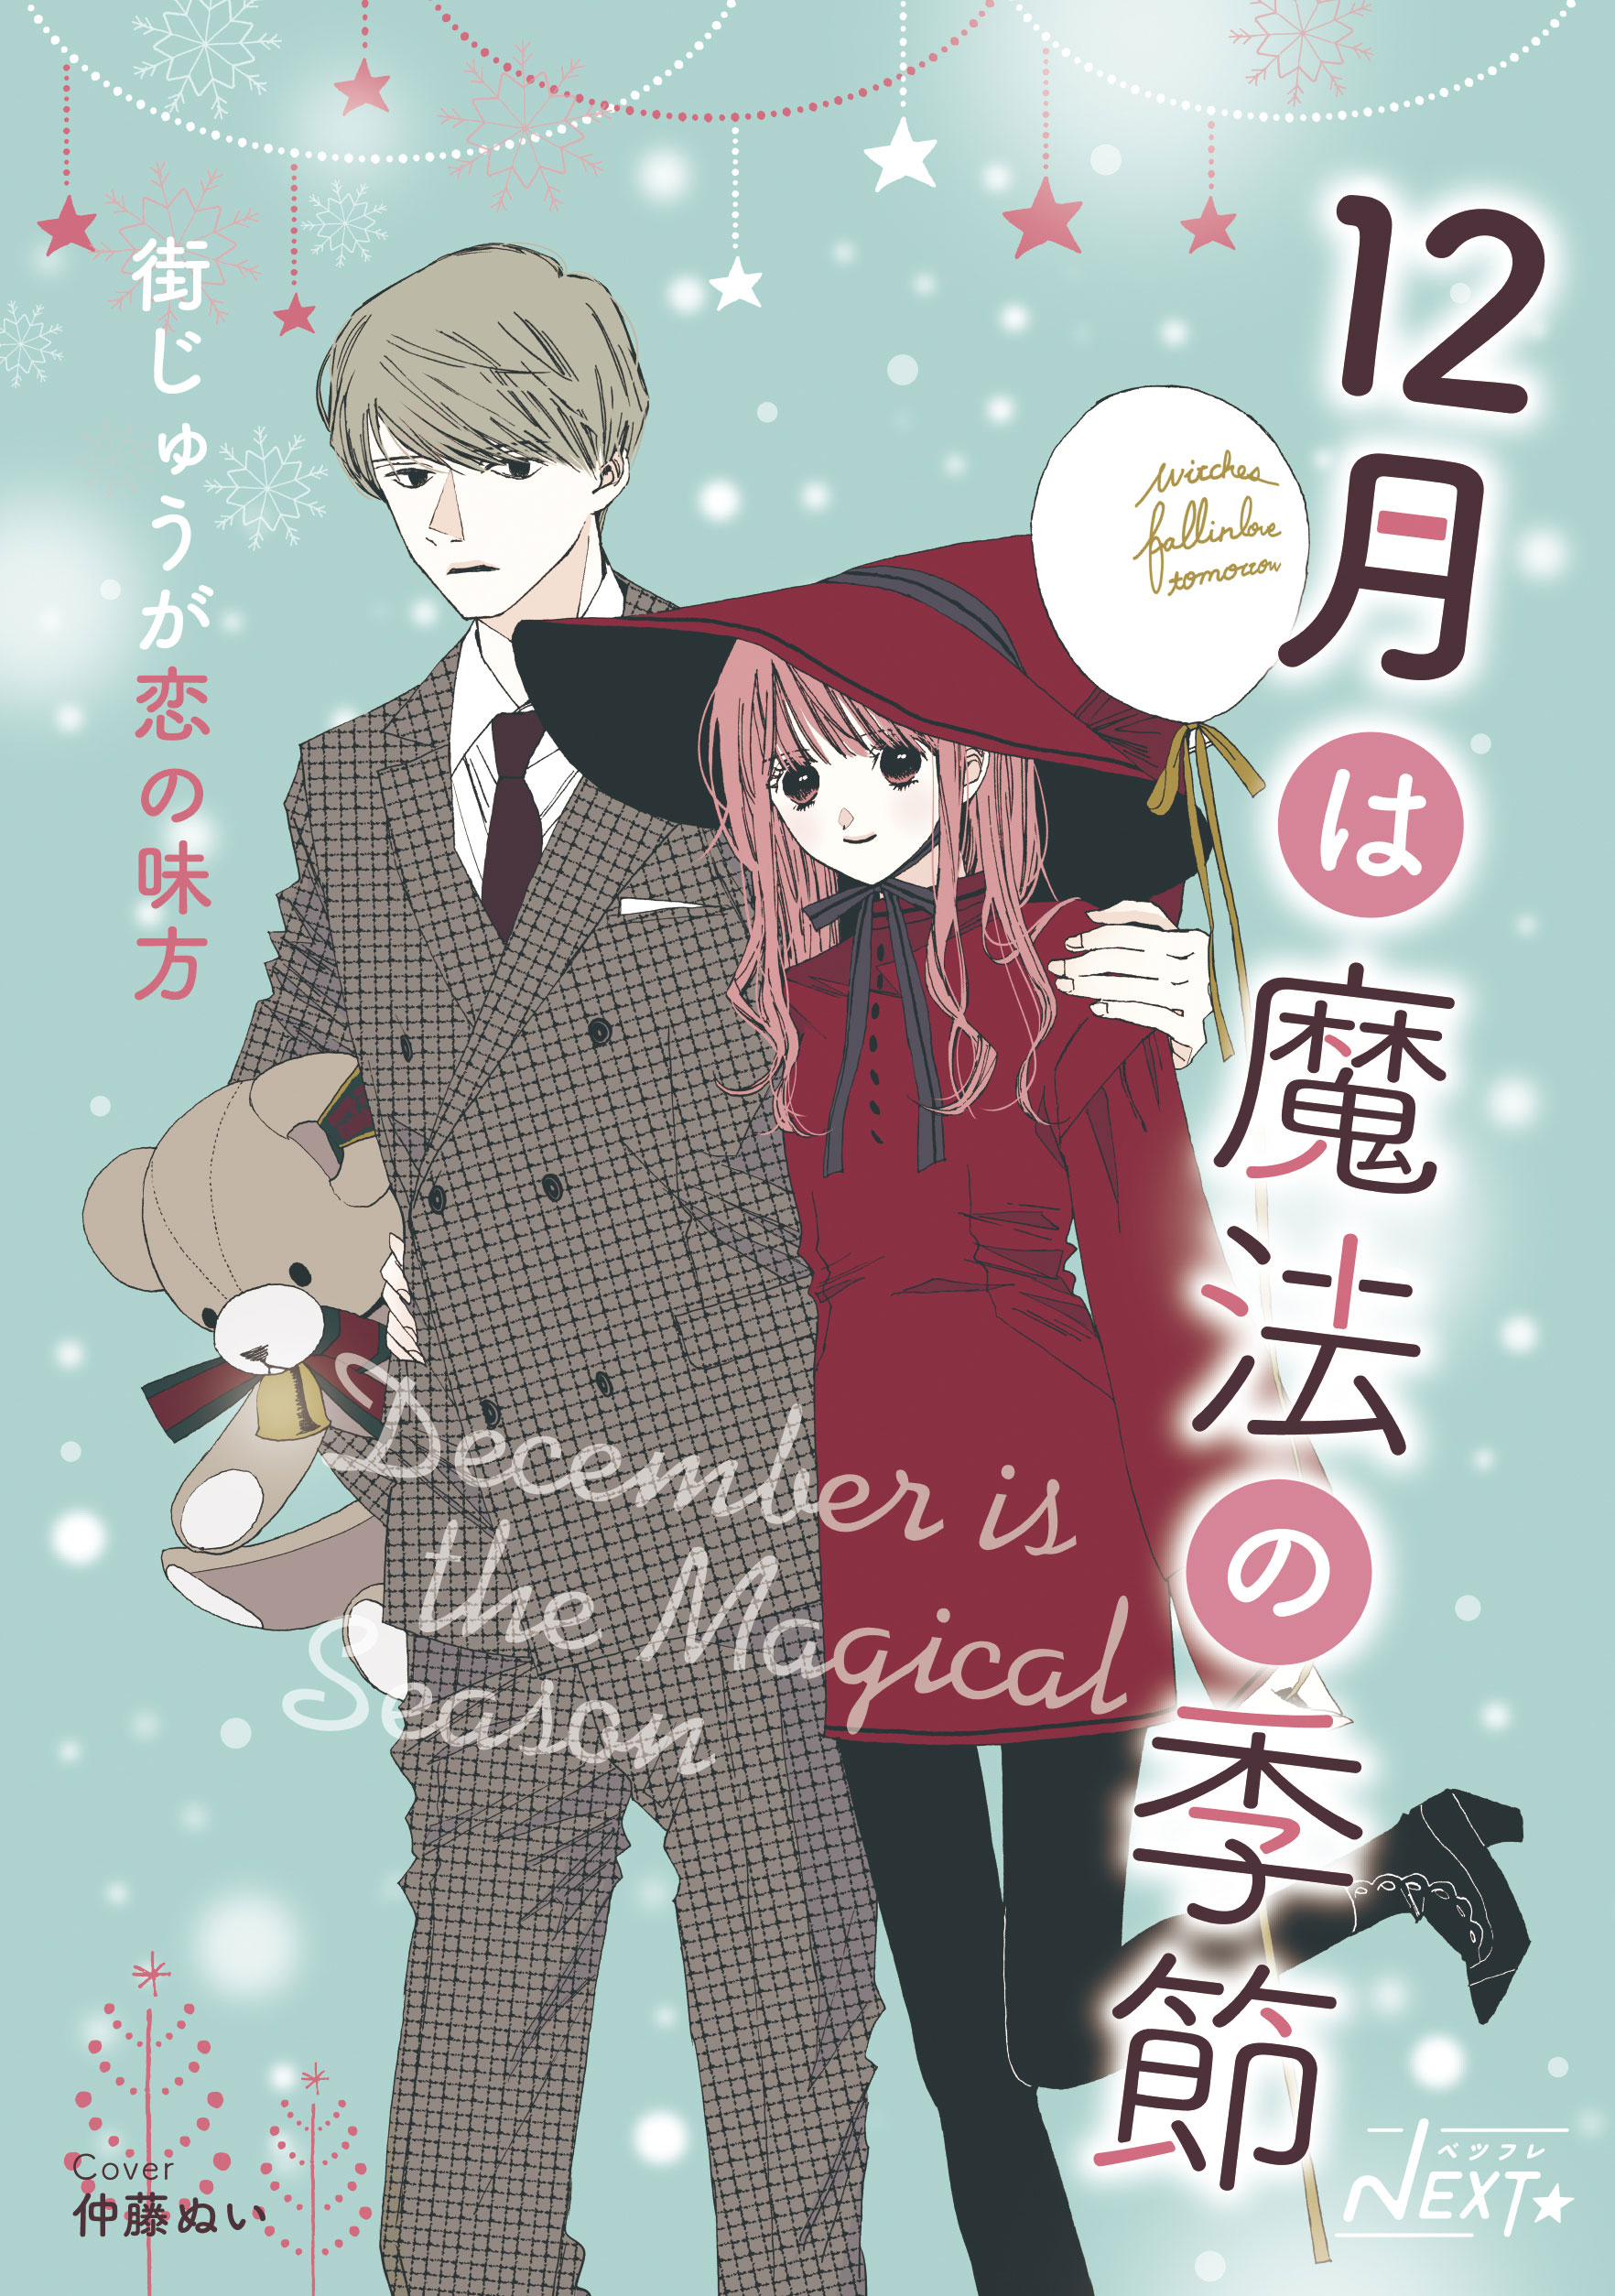 ベツフレnext 12月は魔法の季節 街じゅうが恋の味方 別冊フレンド 講談社コミックプラス